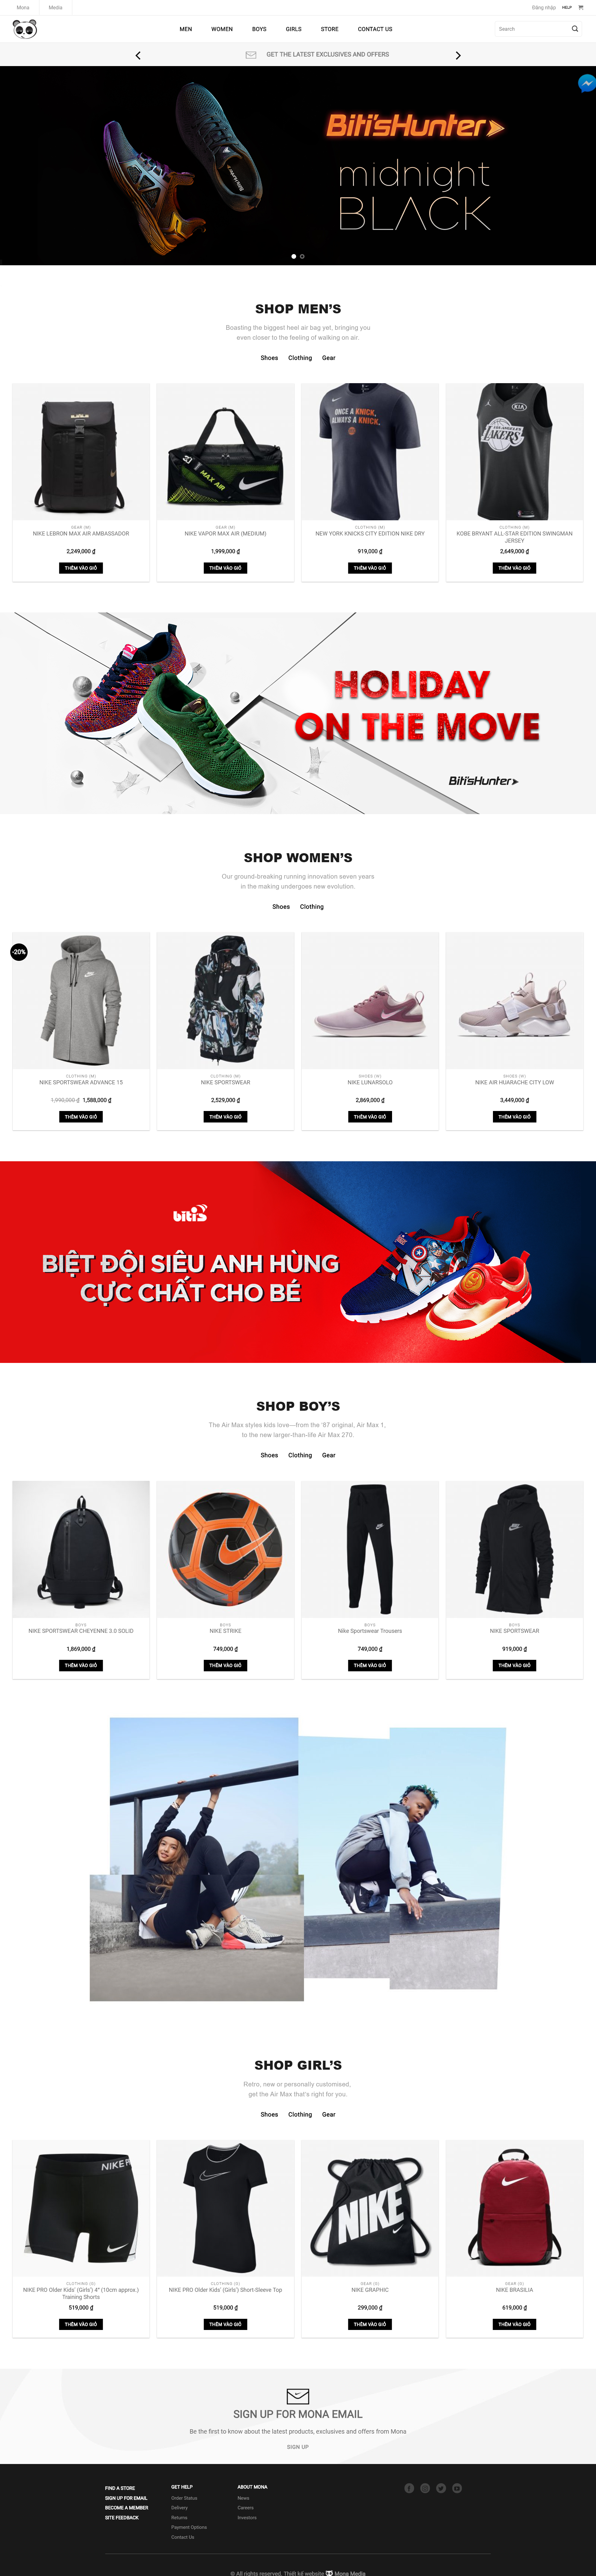 Mẫu thiết kế website bán giày